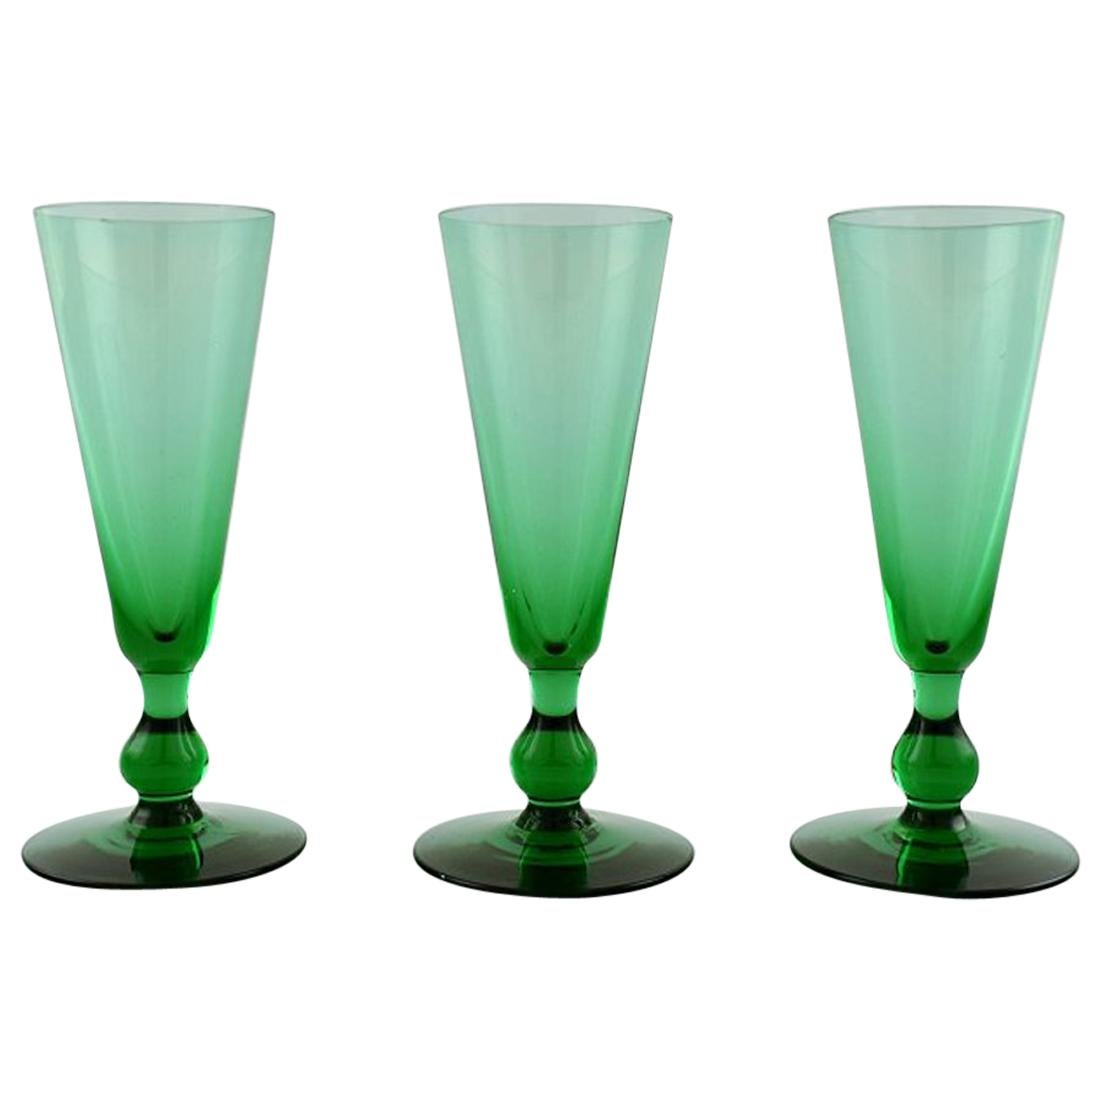 Simon Gate pour Orrefors, ensemble de trois verres d'art verts